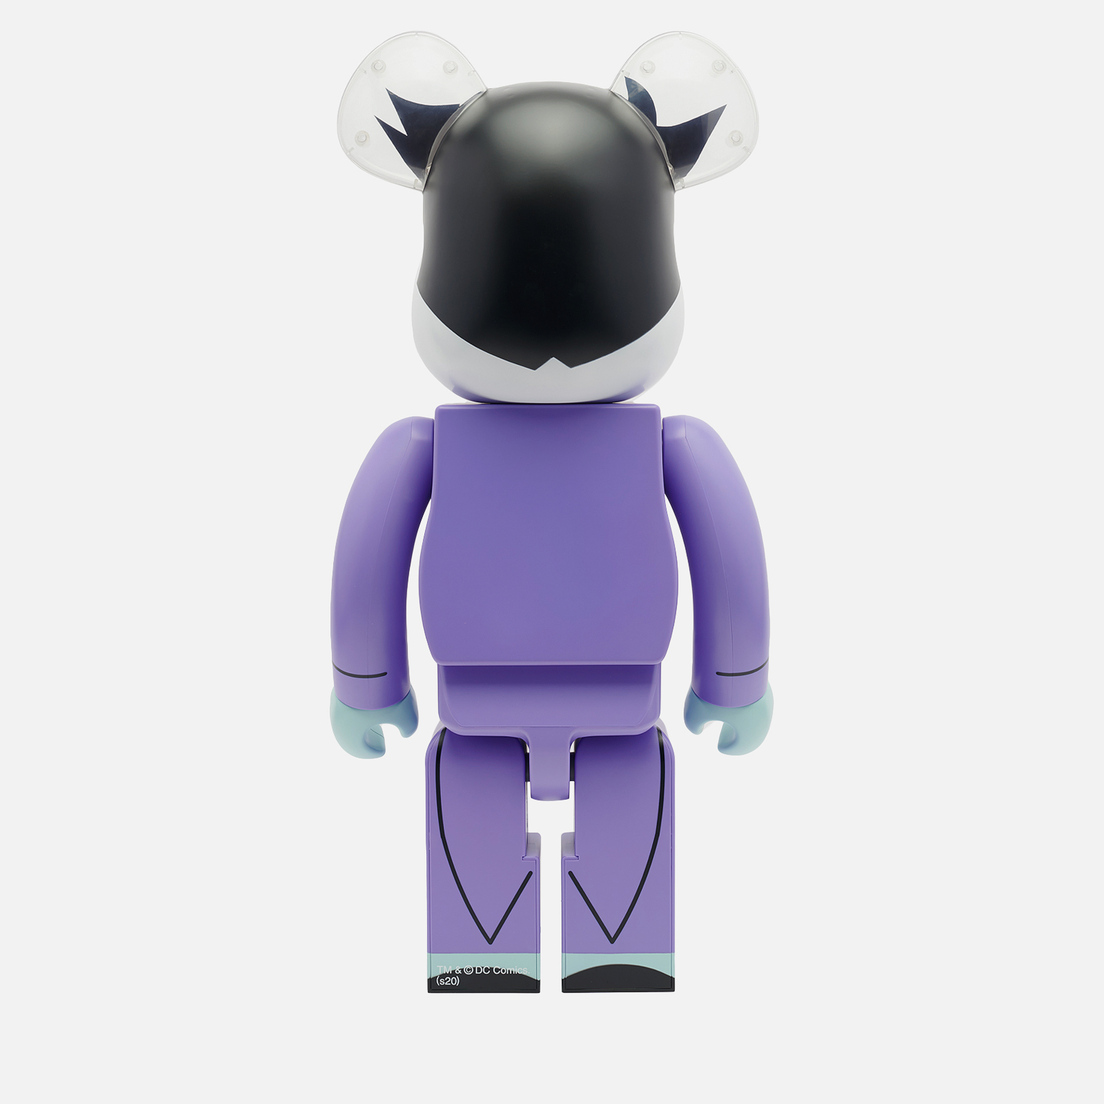 Medicom Toy Игрушка Joker The Animated Series 1000%